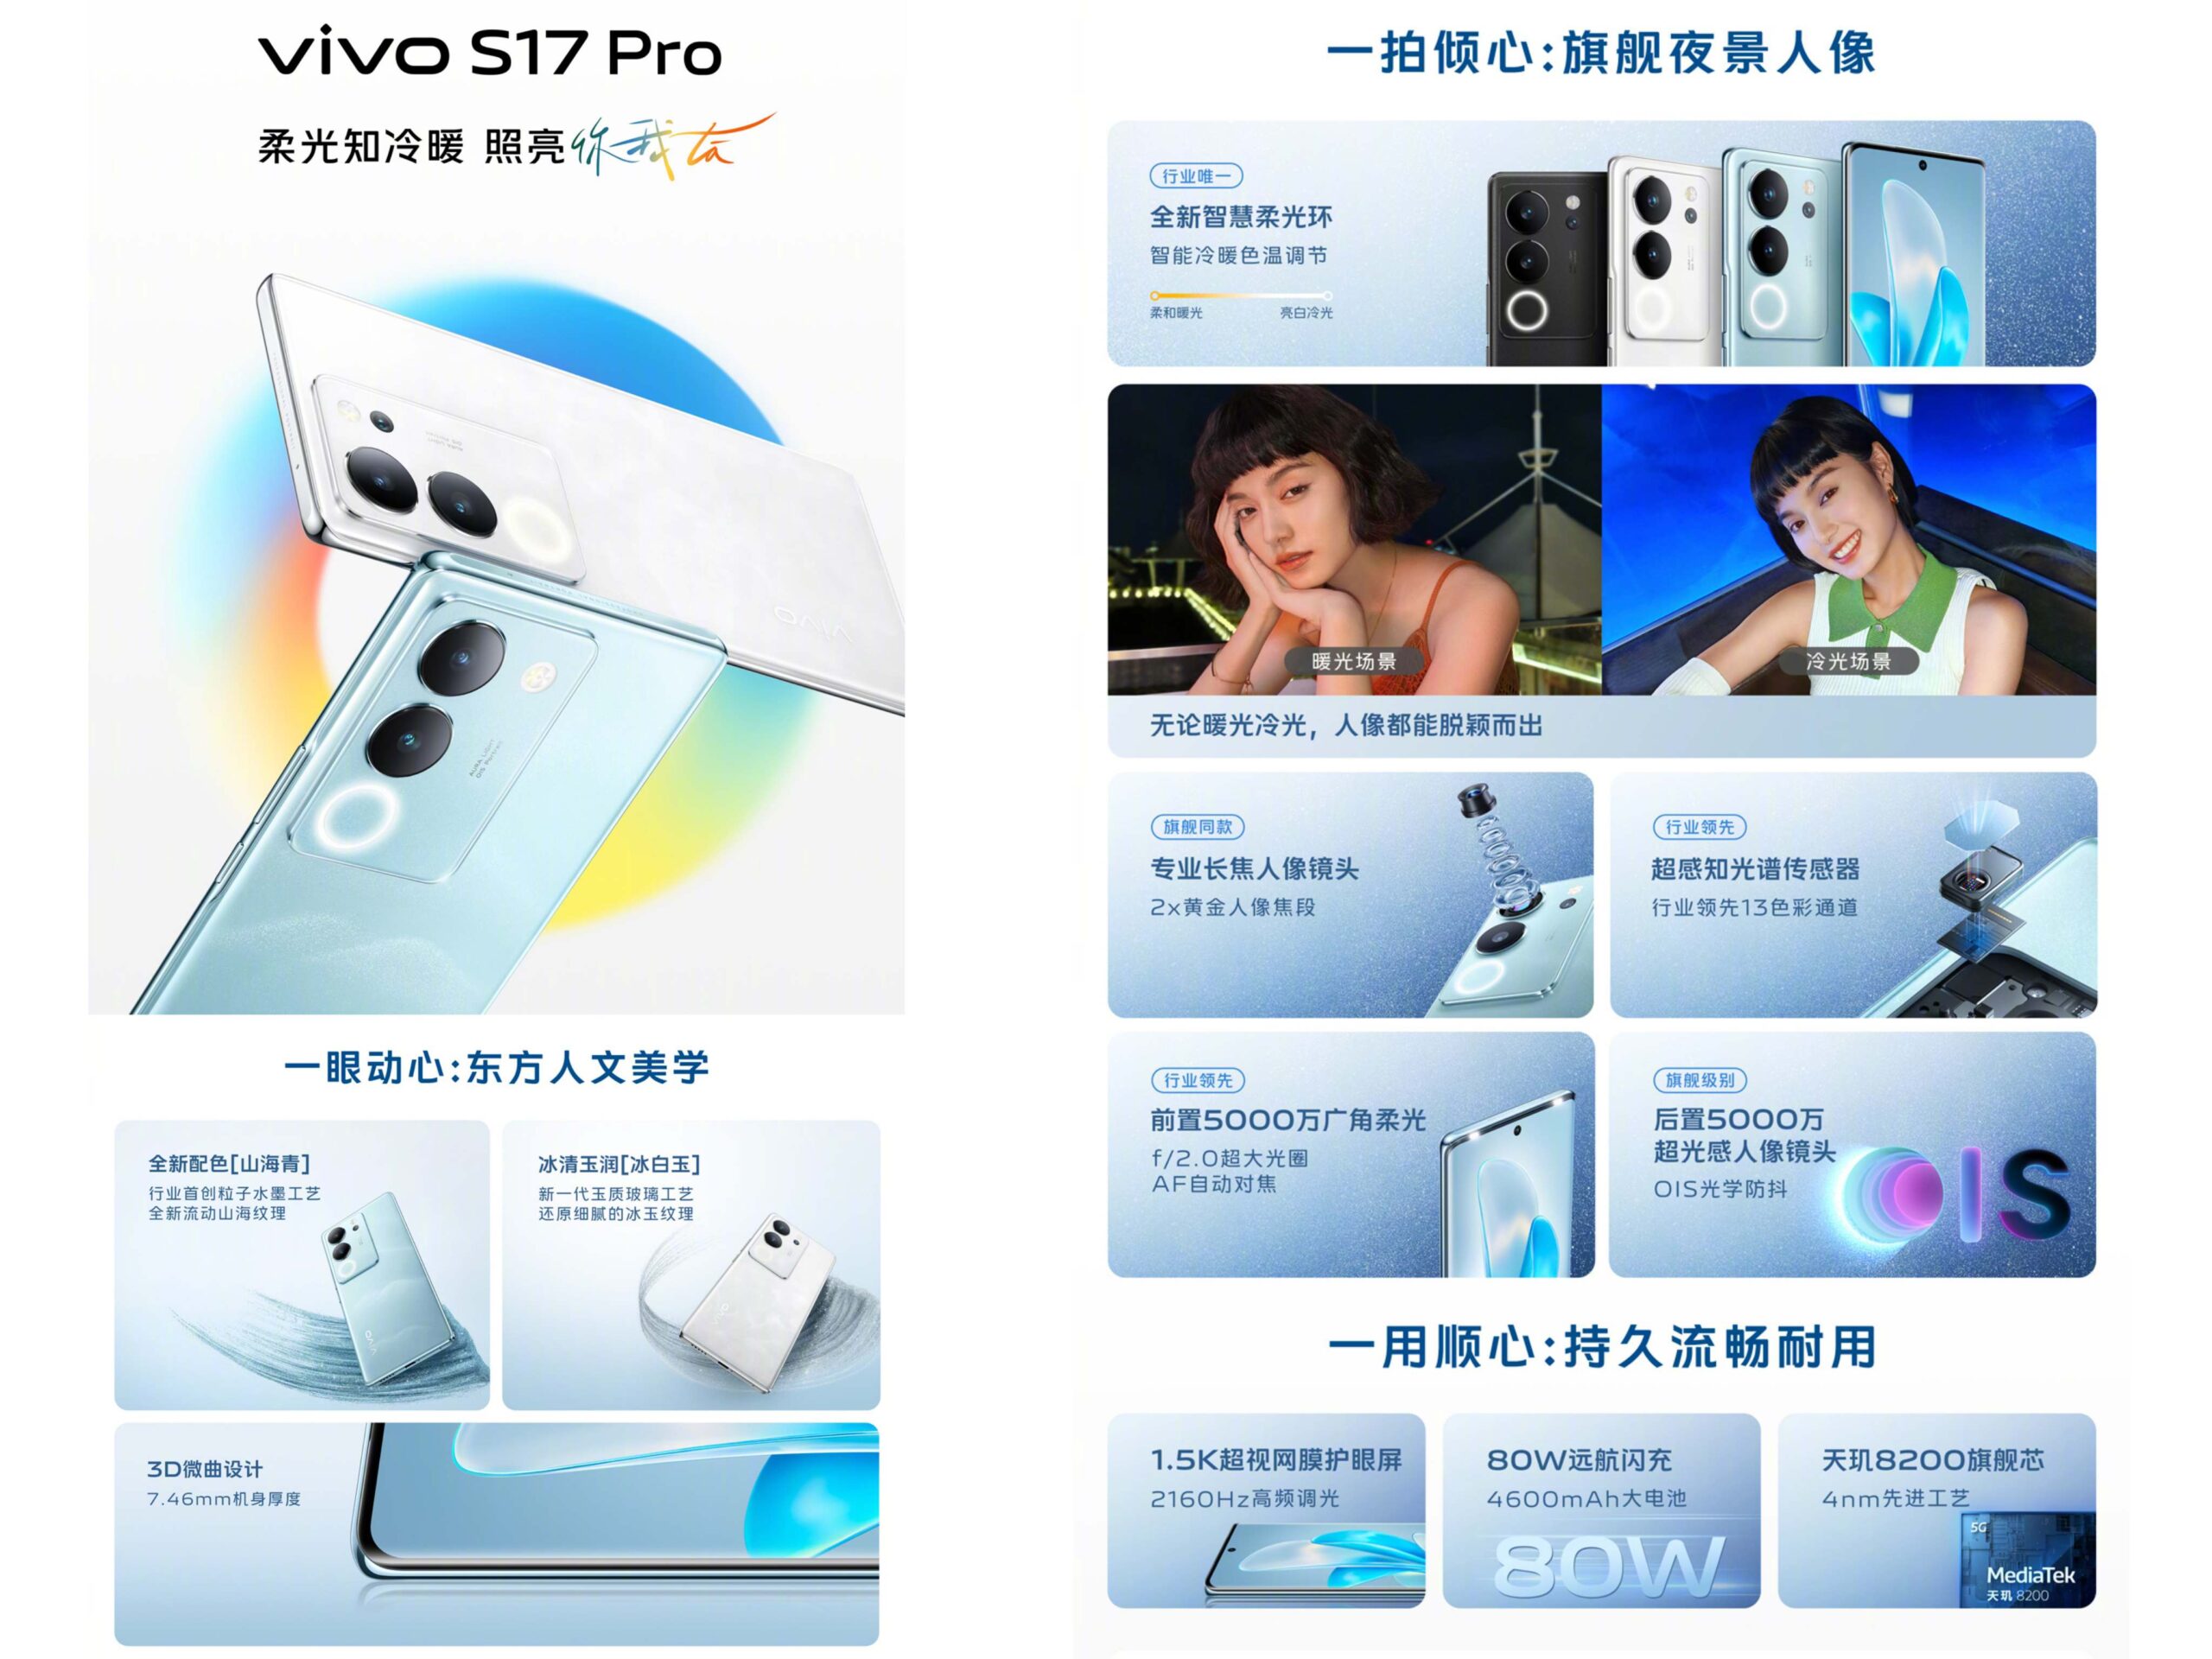 Vivo S17 Pro